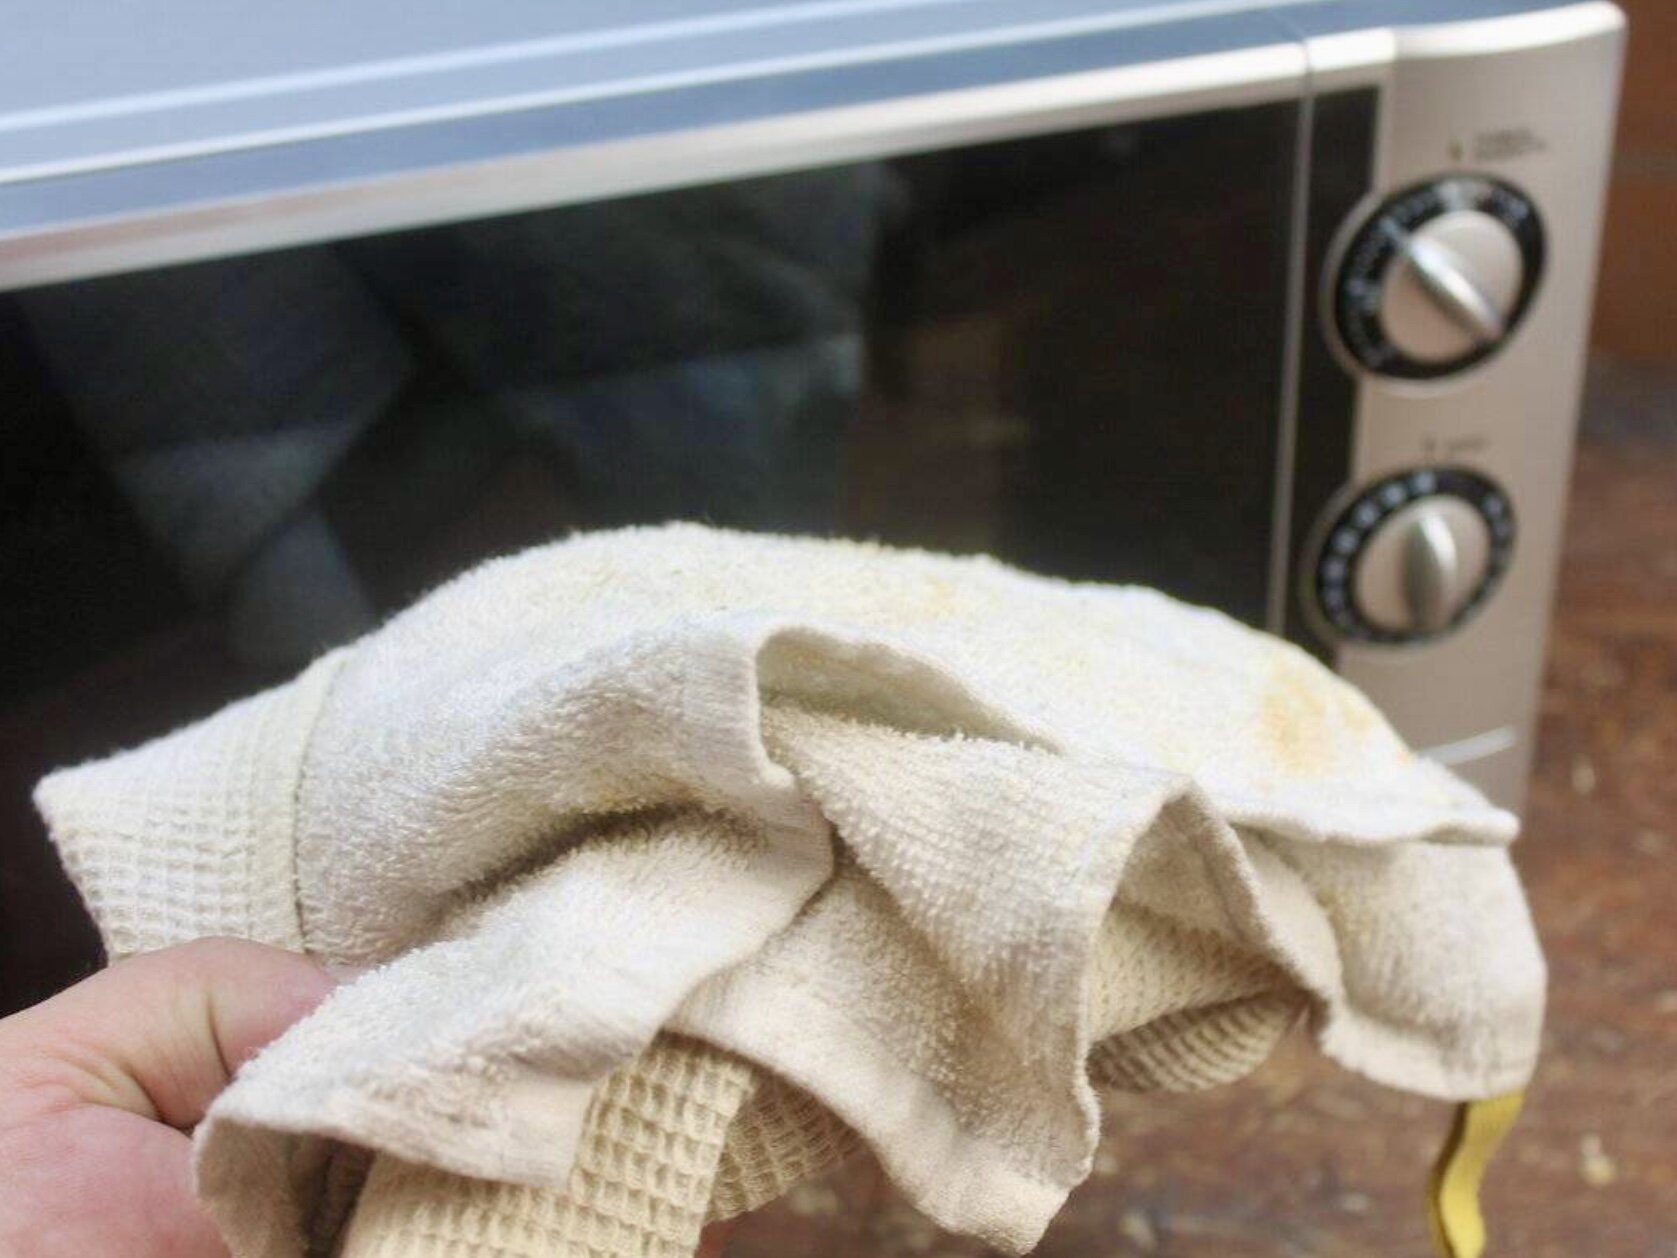 Давно перестала стирать кухонные полотенца: 5-7 минут и они как новые, приятно пахнут свежестью. Делюсь несложным способом, который выручает